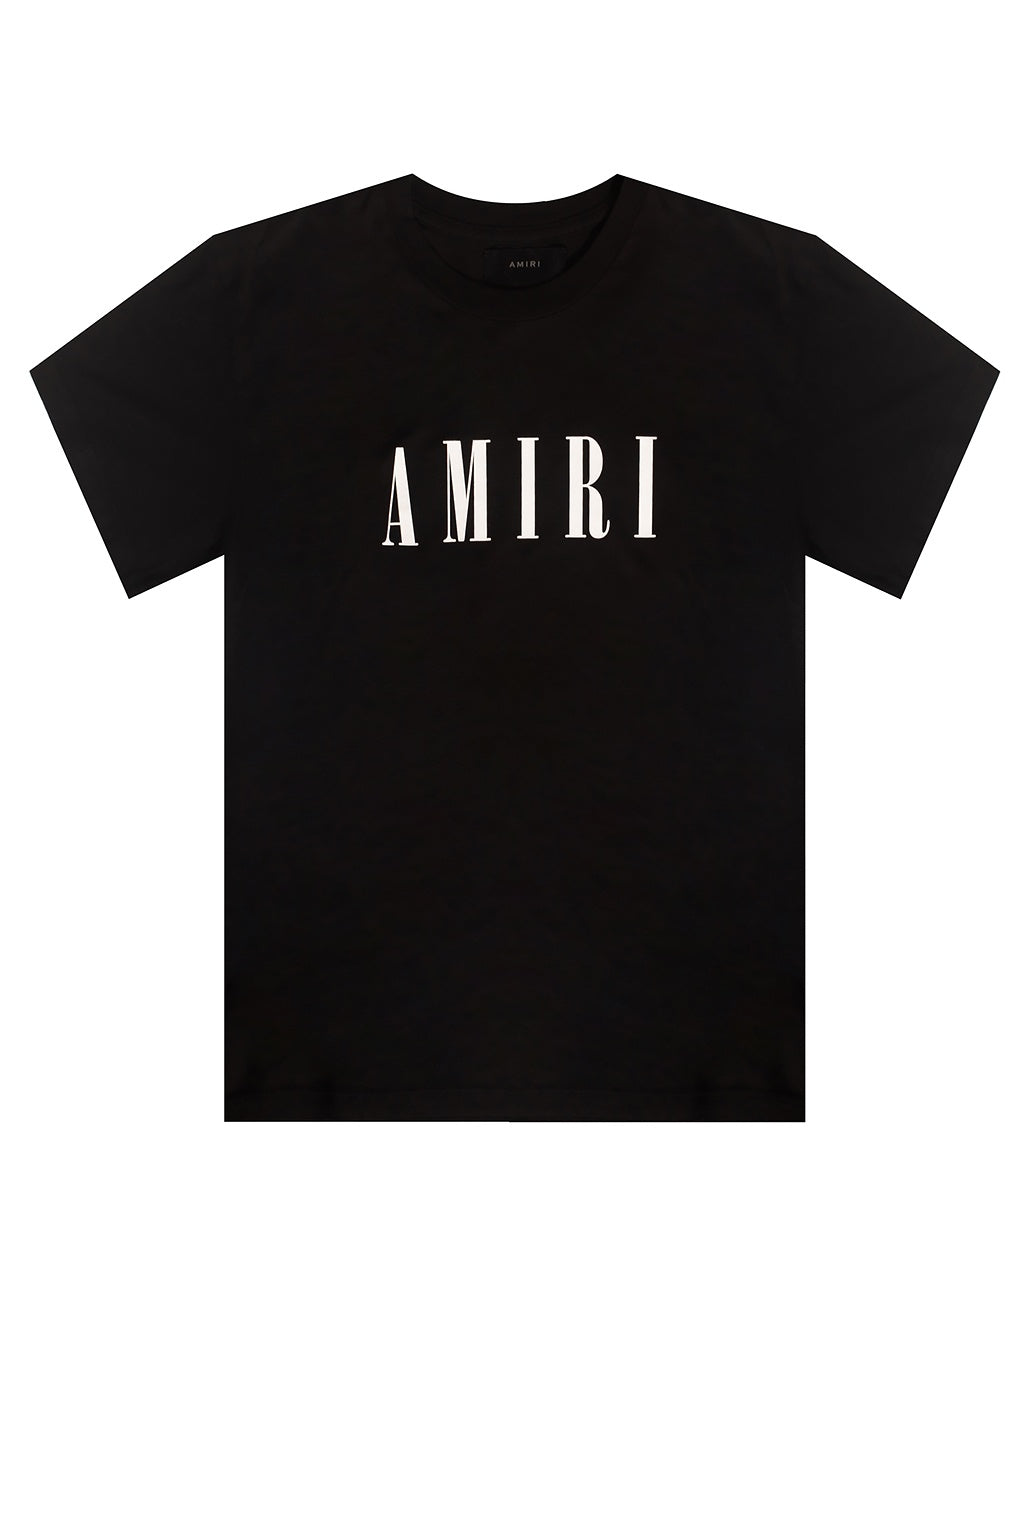 AMIRI BLACK / WHITE T-SHIRT